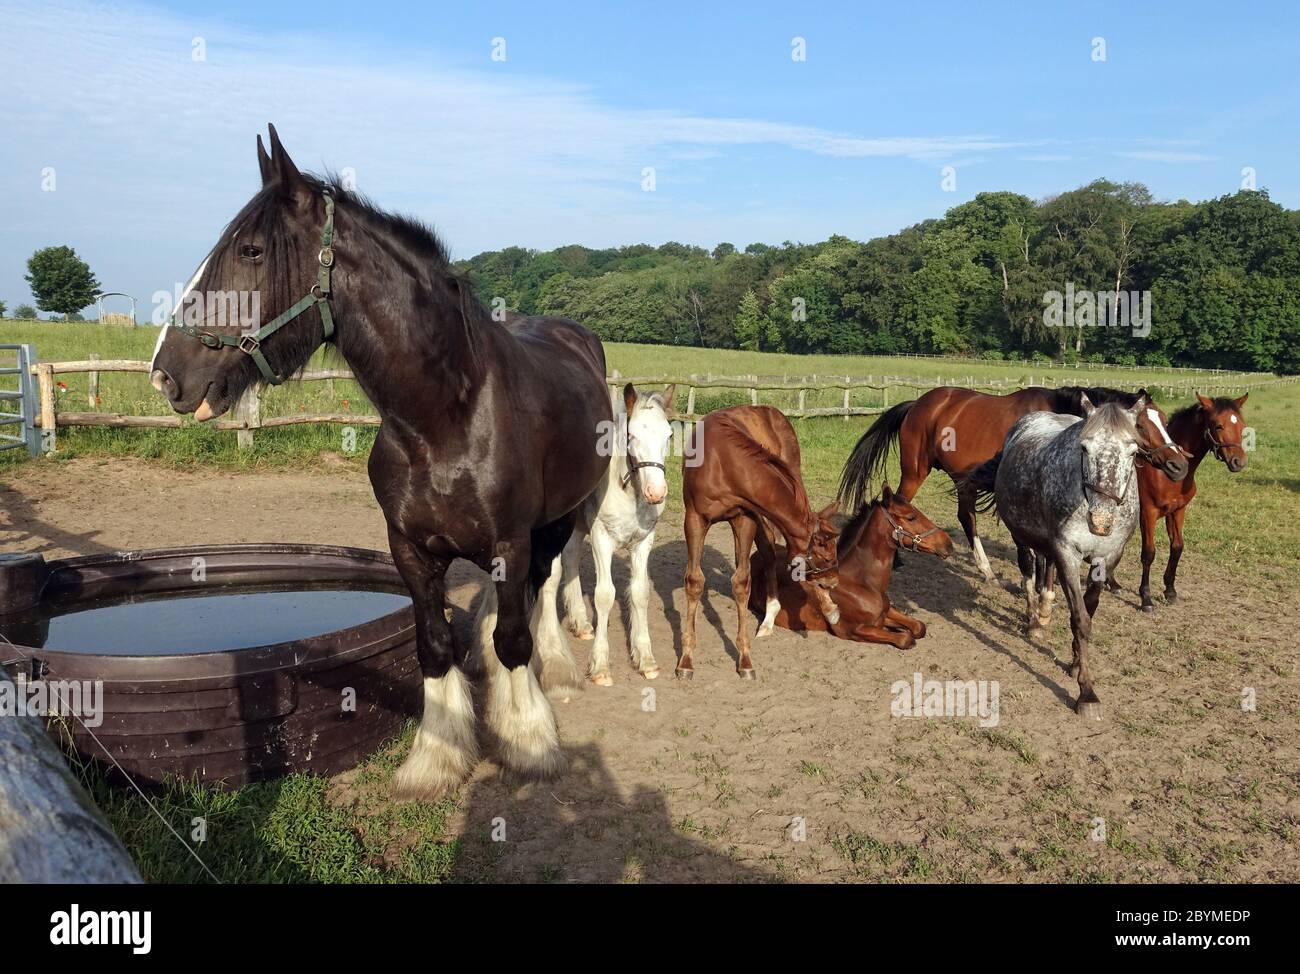 02.06.2019, Goerlsdorf, Brandeburgo, Germania - il cavallo si trova in un pascolo accanto ad una vasca d'acqua. 00S190602D415CAROEX.JPG [VERSIONE MODELLO: NON APPL Foto Stock